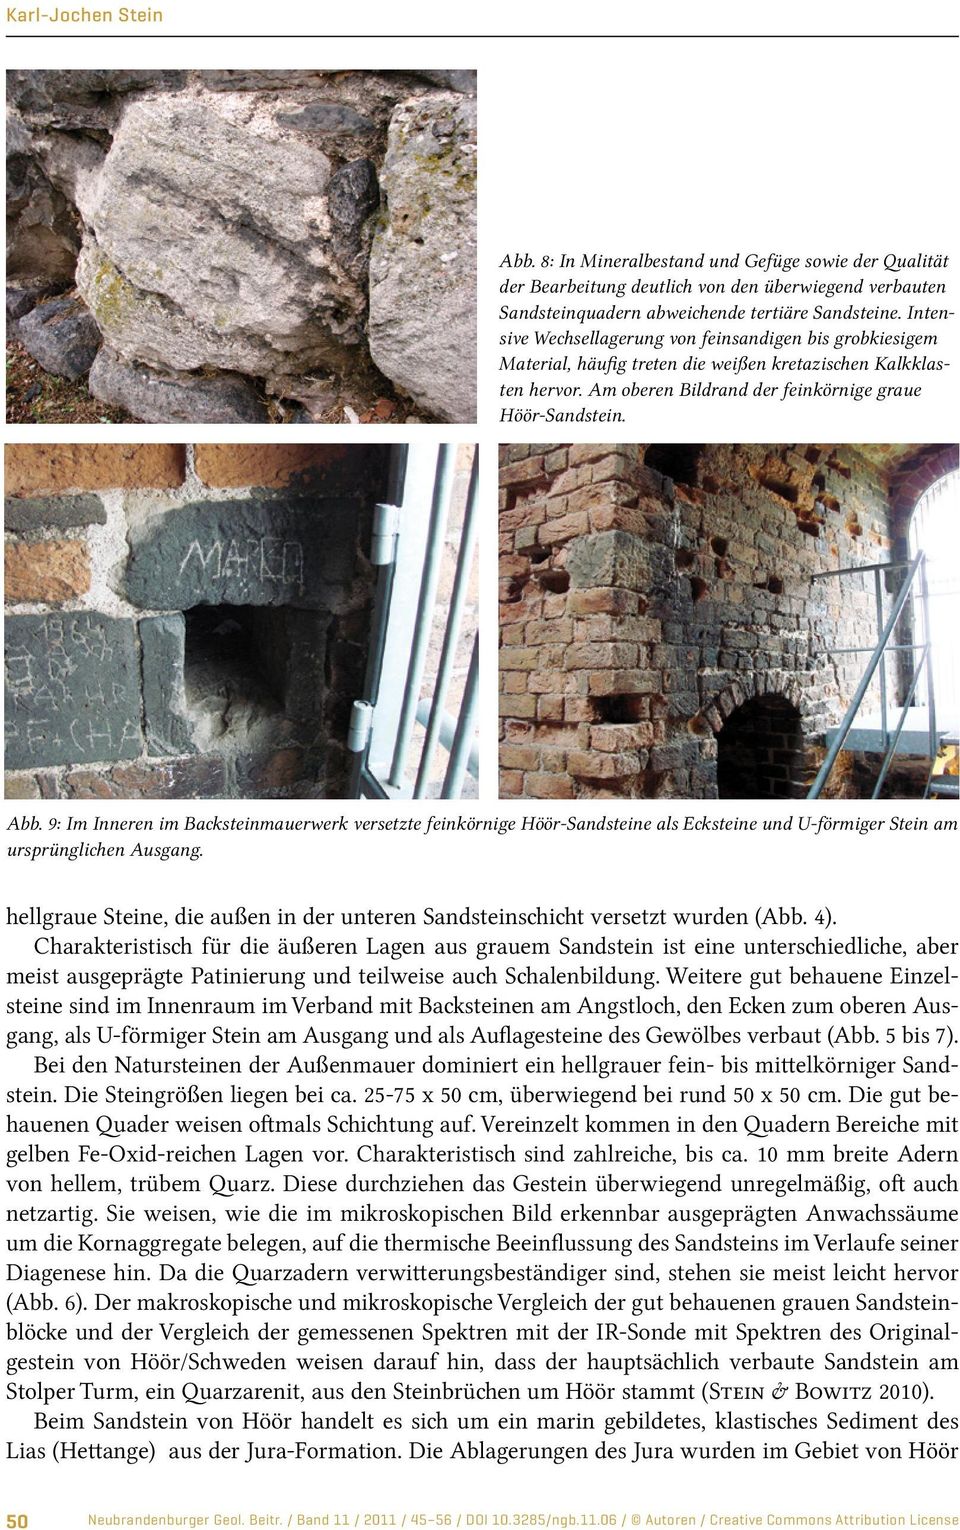 9: Im Inneren im Backsteinmauerwerk versetzte feinkörnige Höör-Sandsteine als Ecksteine und U-förmiger Stein am ursprünglichen Ausgang.